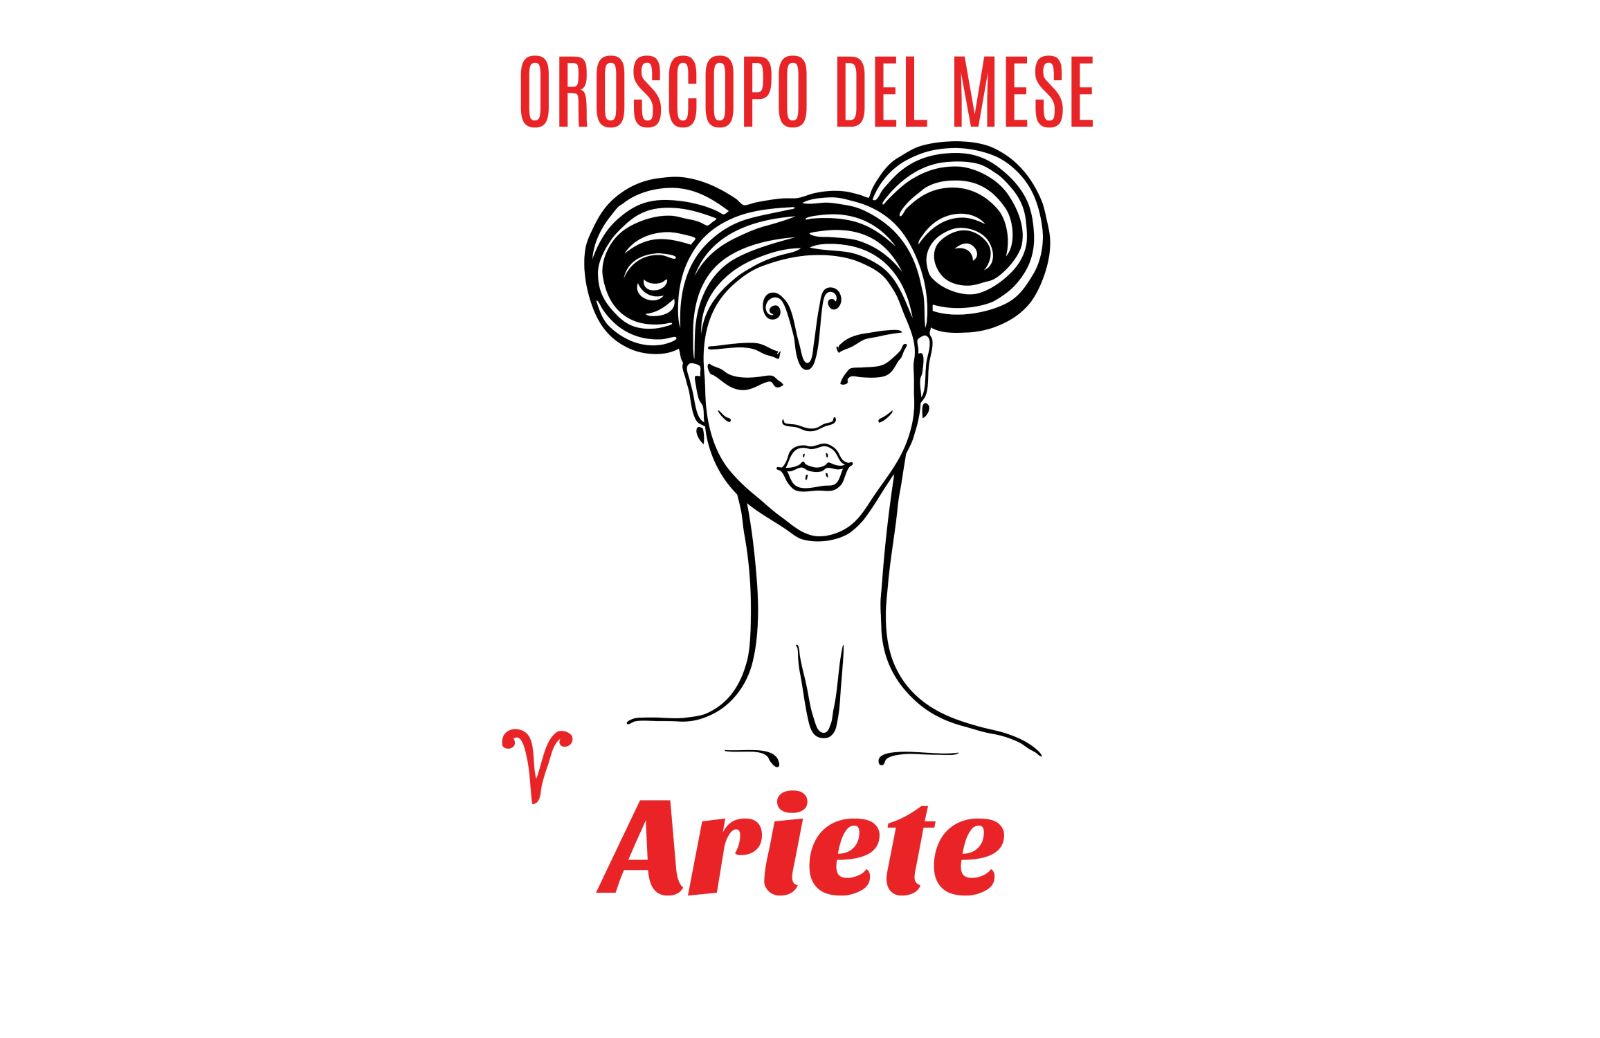 Oroscopo del mese: Ariete - agosto 2020